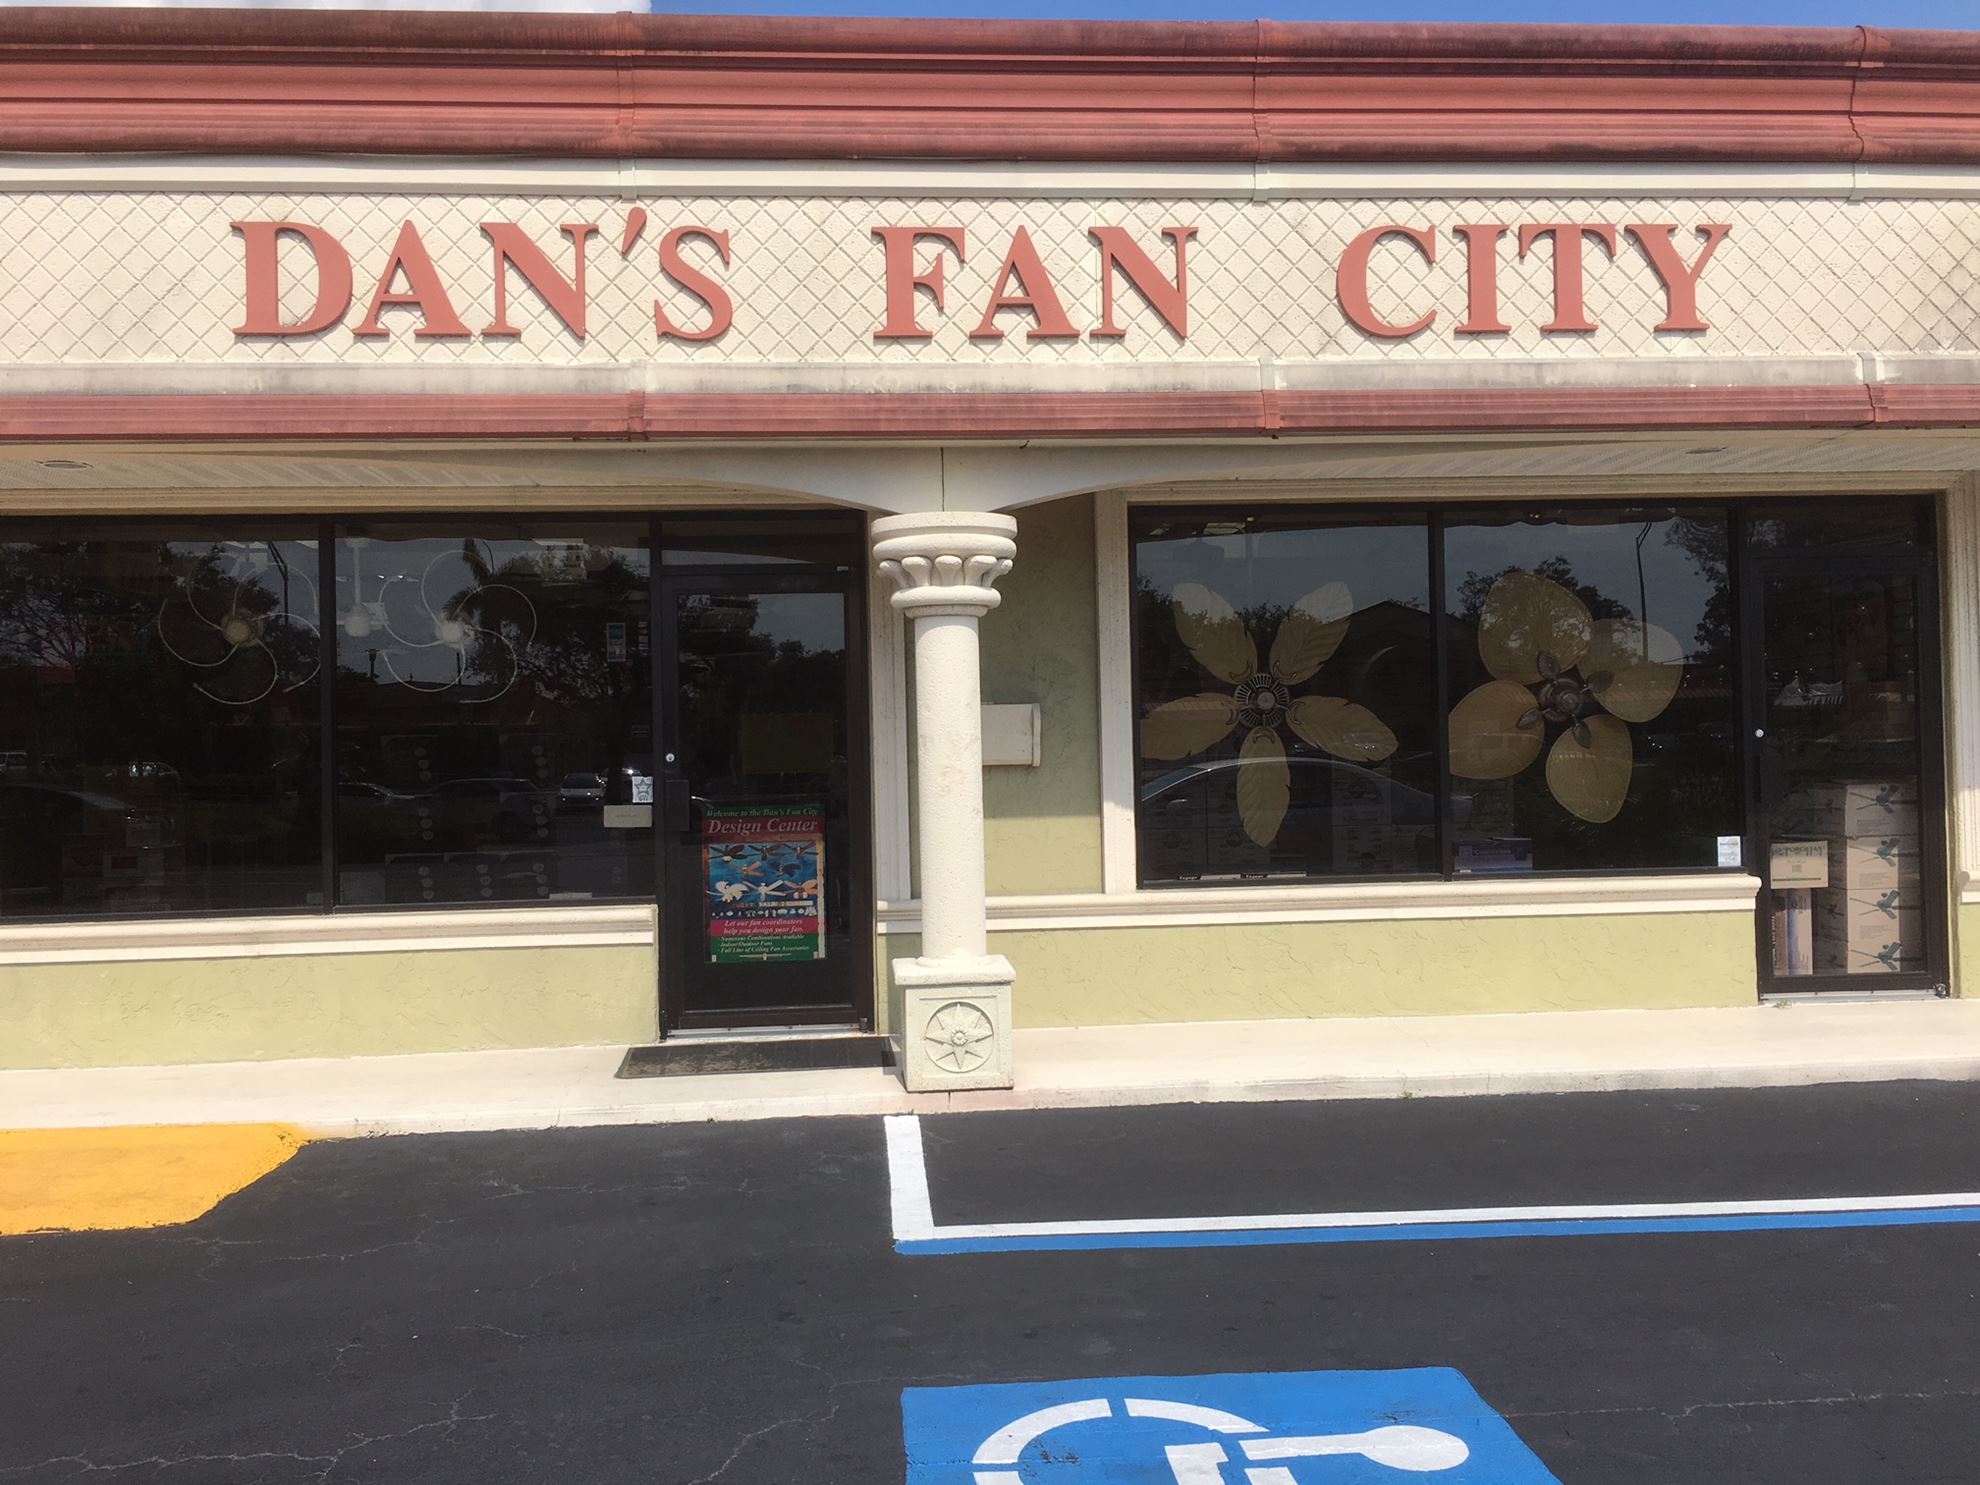 Ceiling Fan Store In Ocoee Fl Dan S Fan City Dan S Fan City C Ceiling Fans Fan Parts Accessories